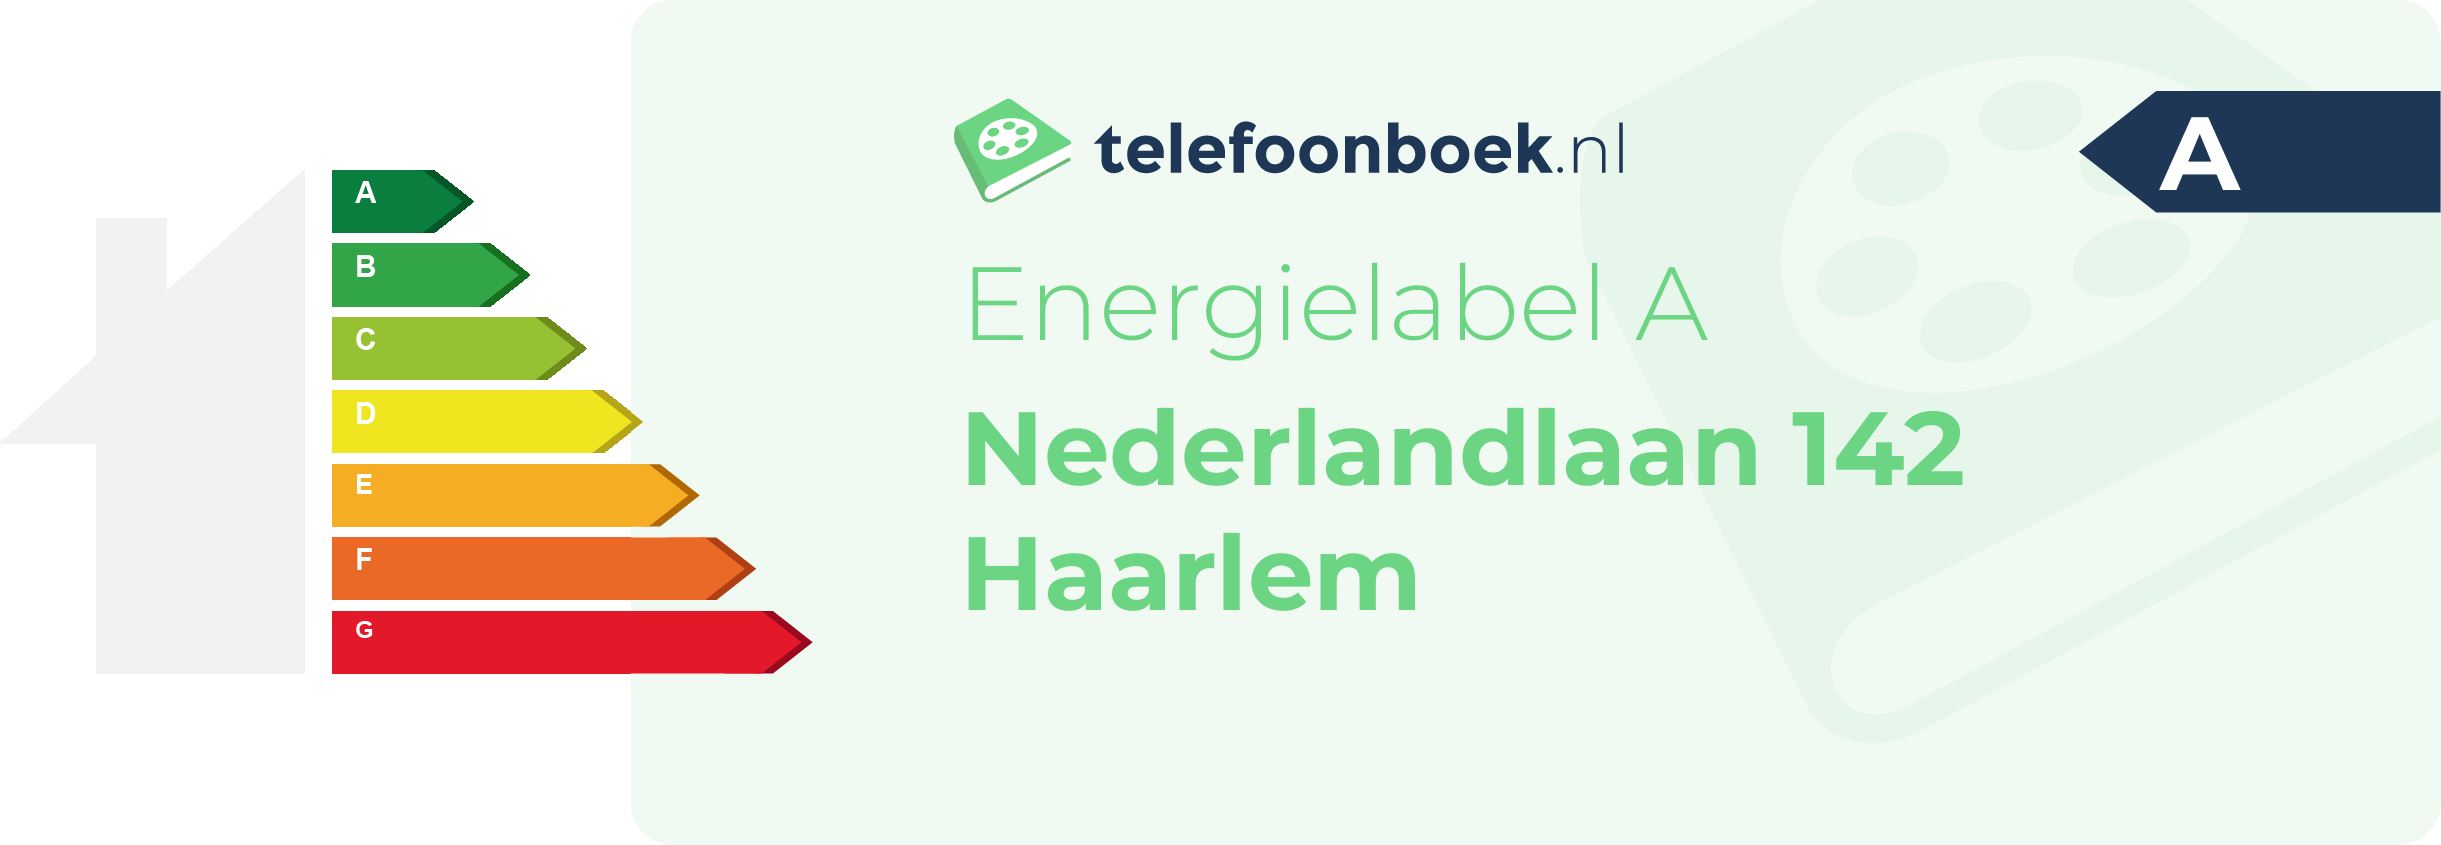 Energielabel Nederlandlaan 142 Haarlem